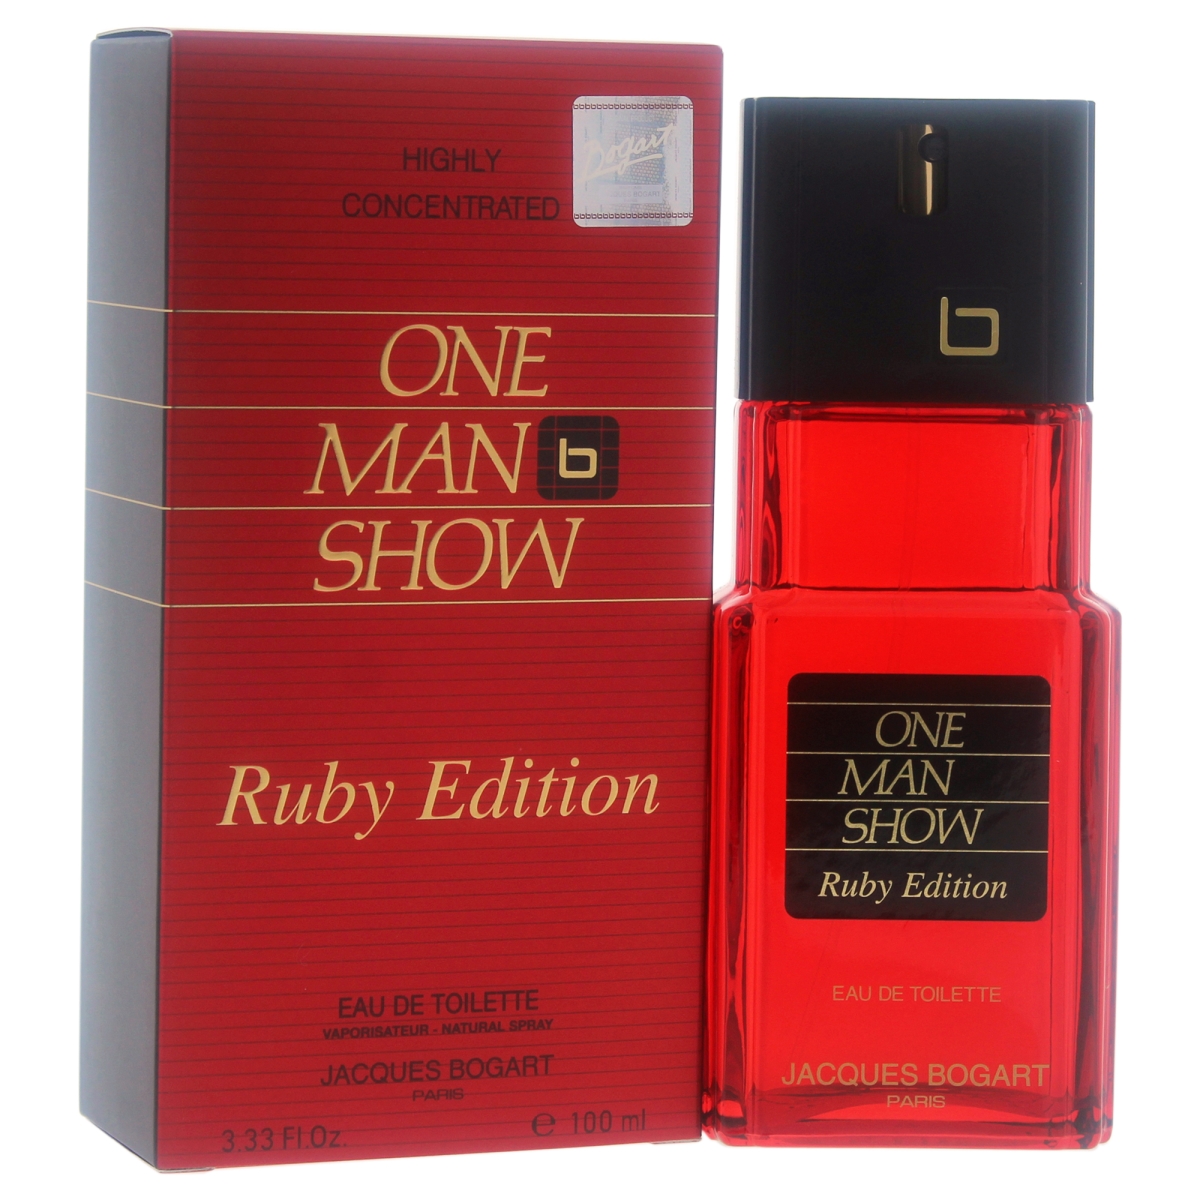 M-5305 One Man Show Eau De Toilette Spray For Men - 3.33 Oz - Ruby Edition